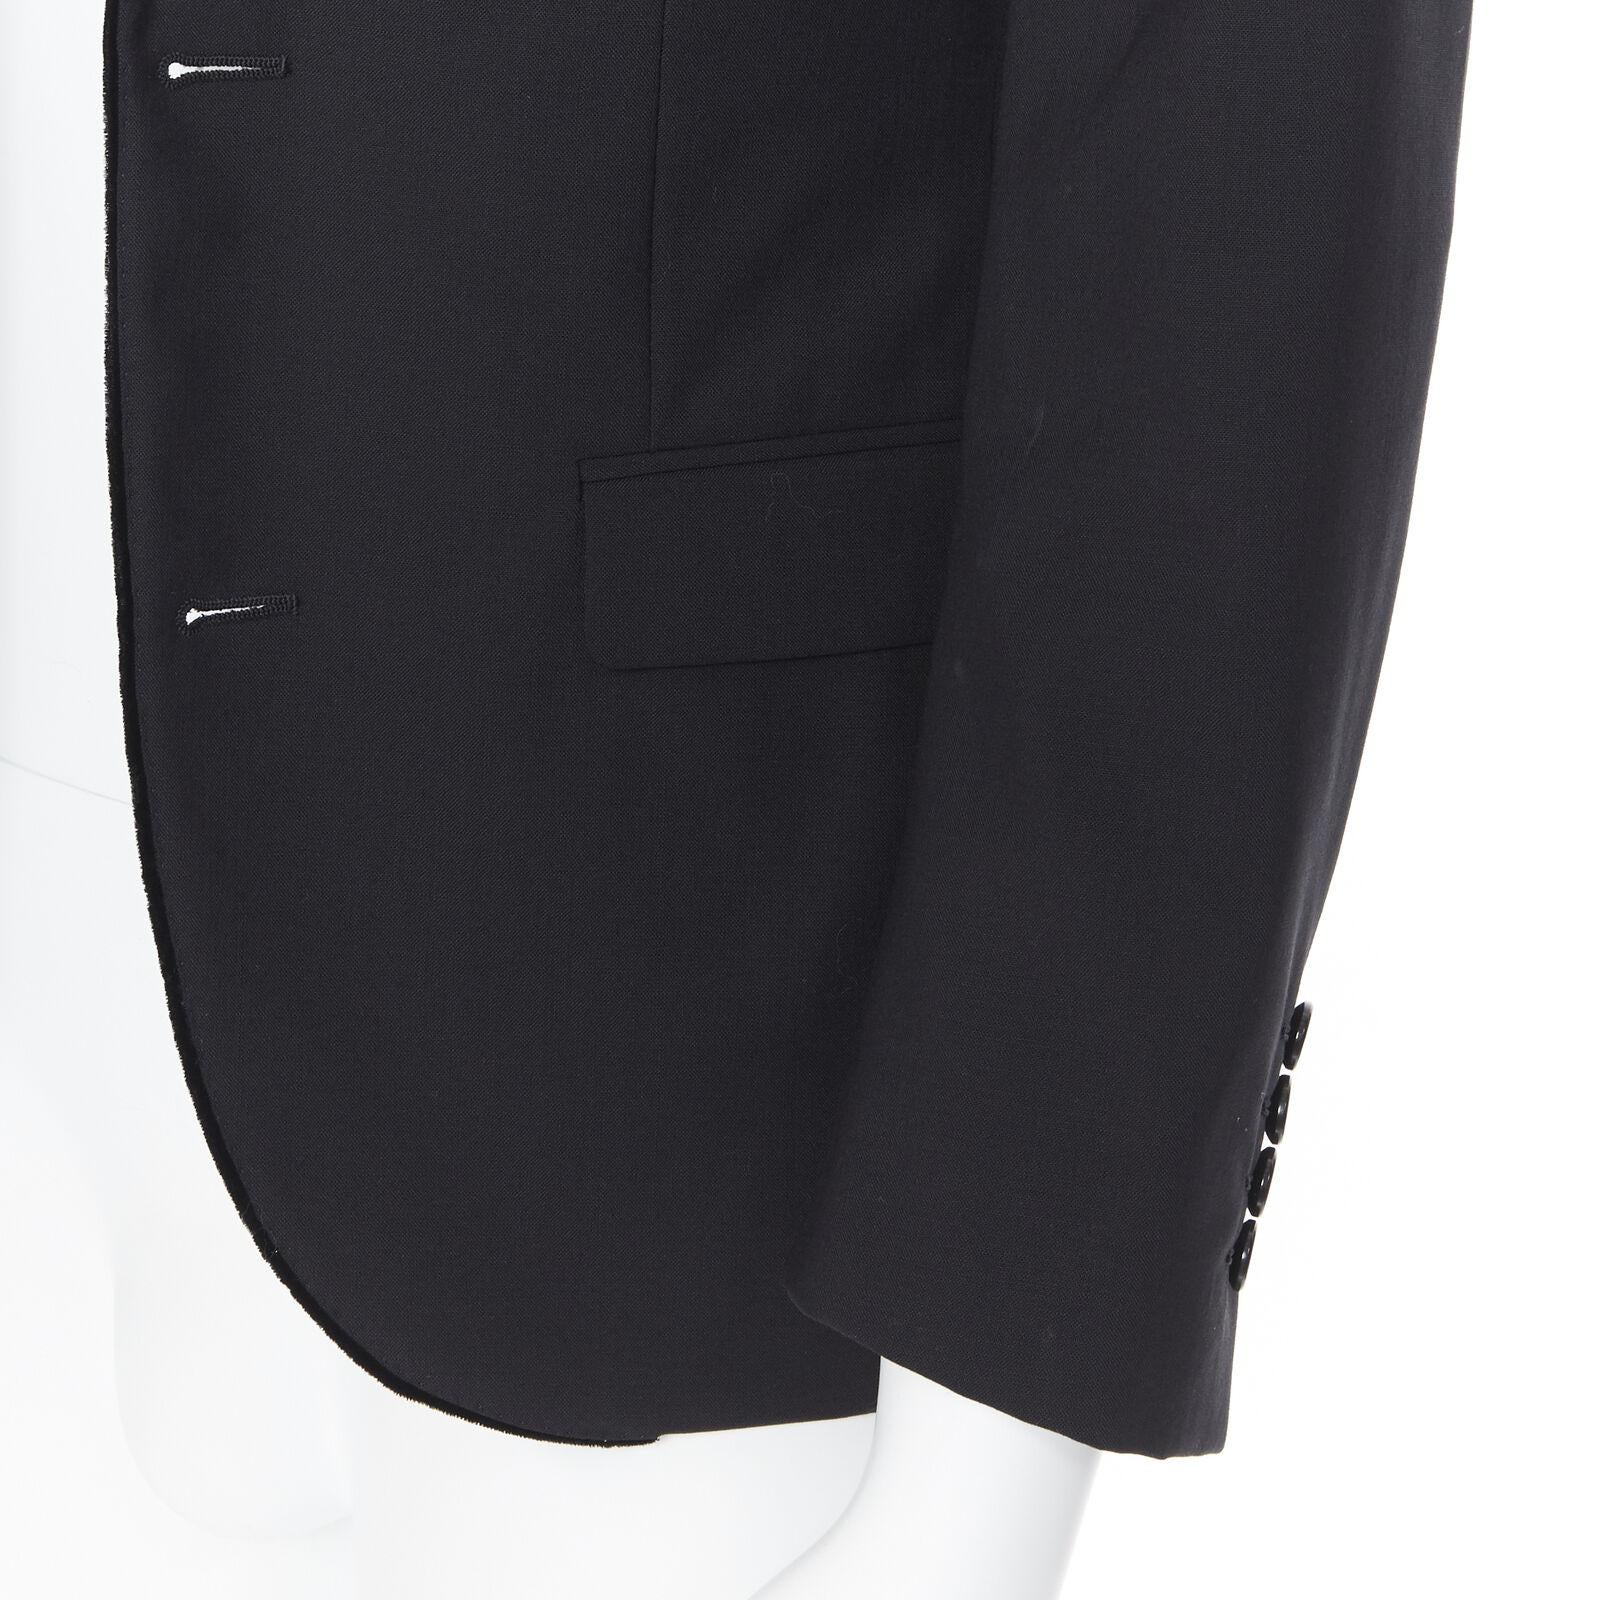 LANVIN ALBER ELBAZ wool blend black velvet peak lapel formal blazer jacket FR44 For Sale 5